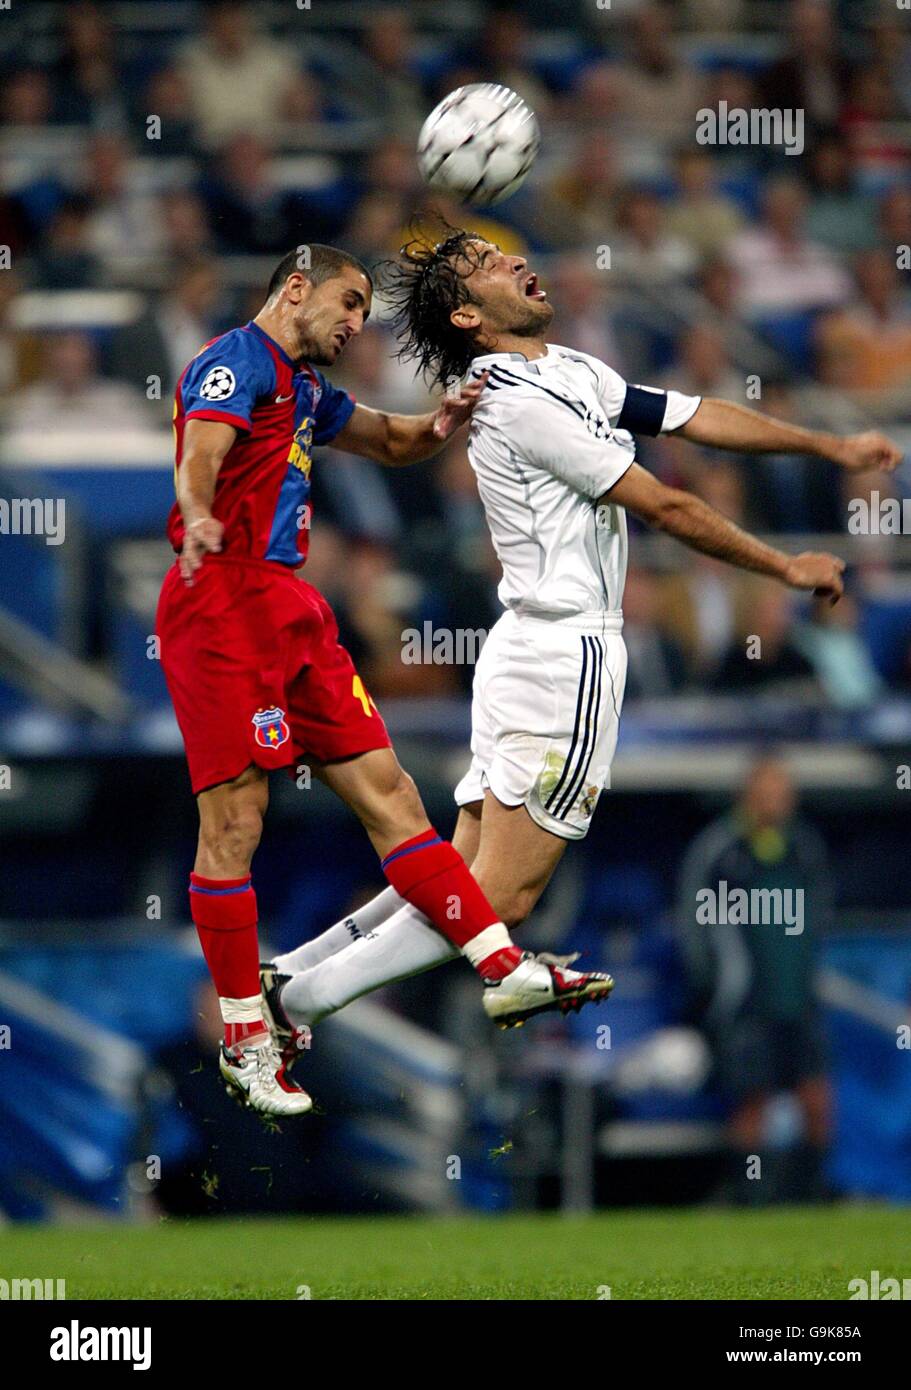 Soccer - UEFA Champions League - Atletico Madrid v Steaua Bucuresti Stock  Photo - Alamy